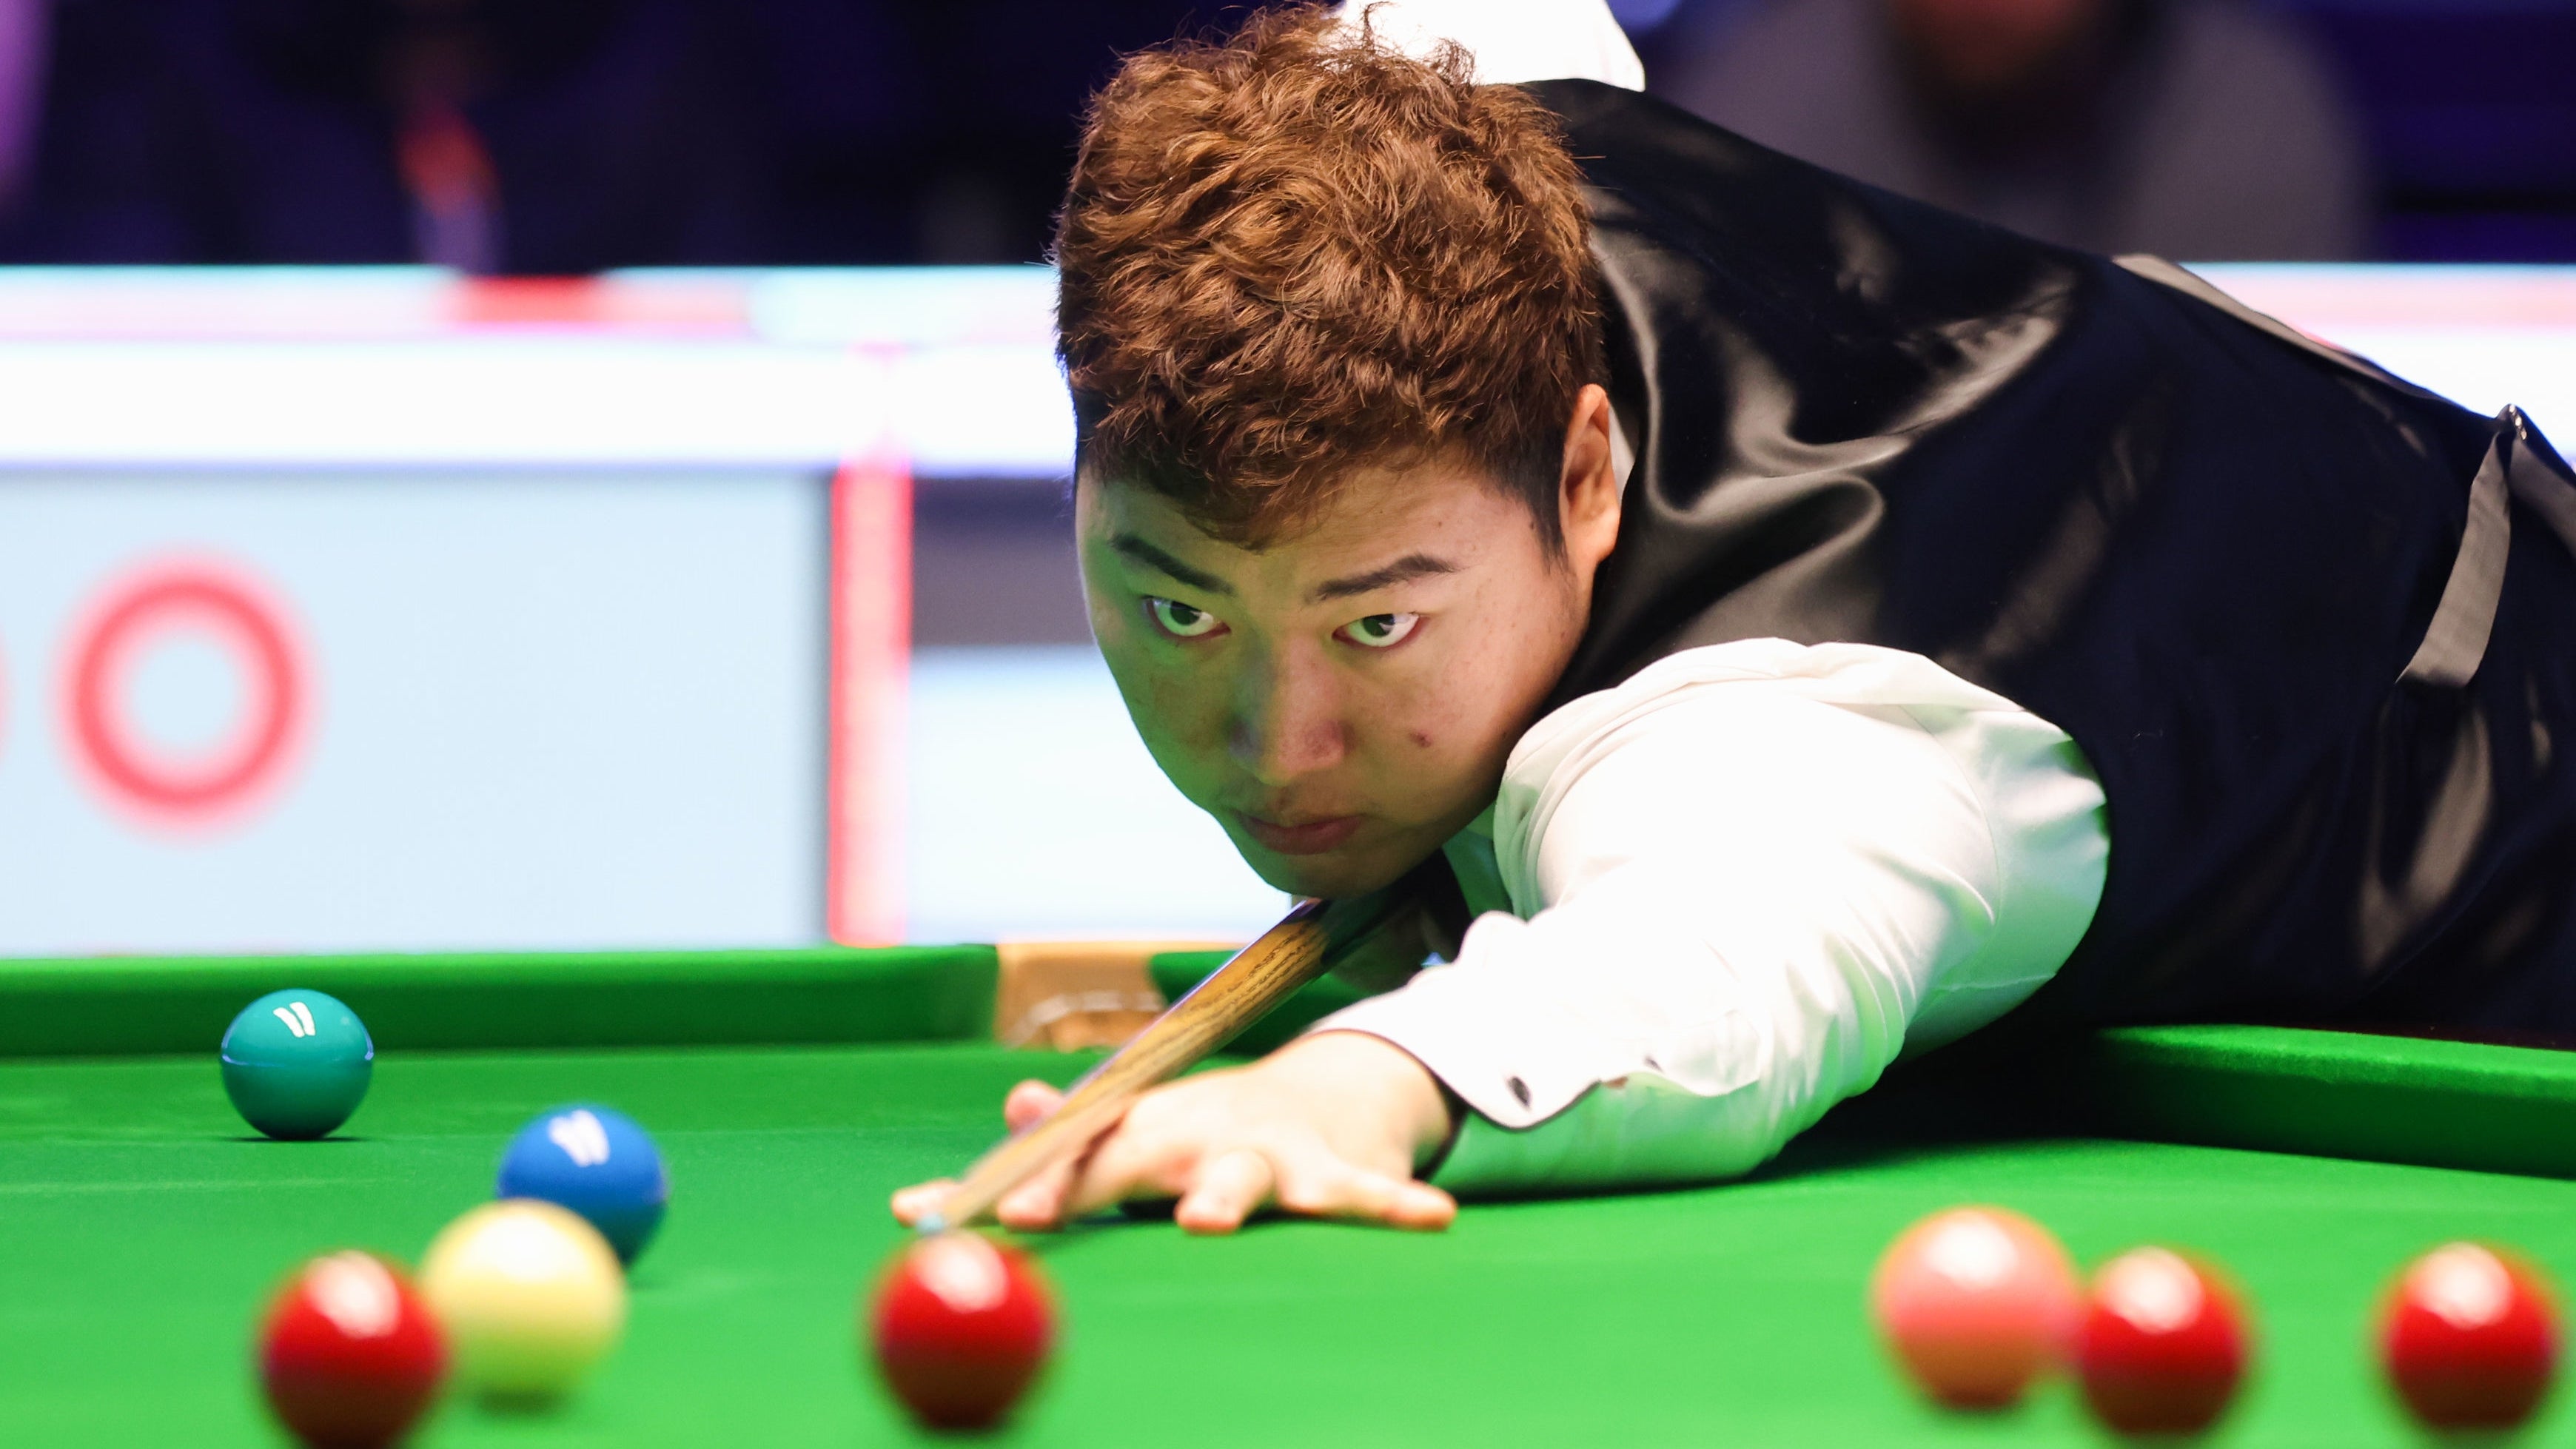 Yan Bingtao won the Masters in 2021